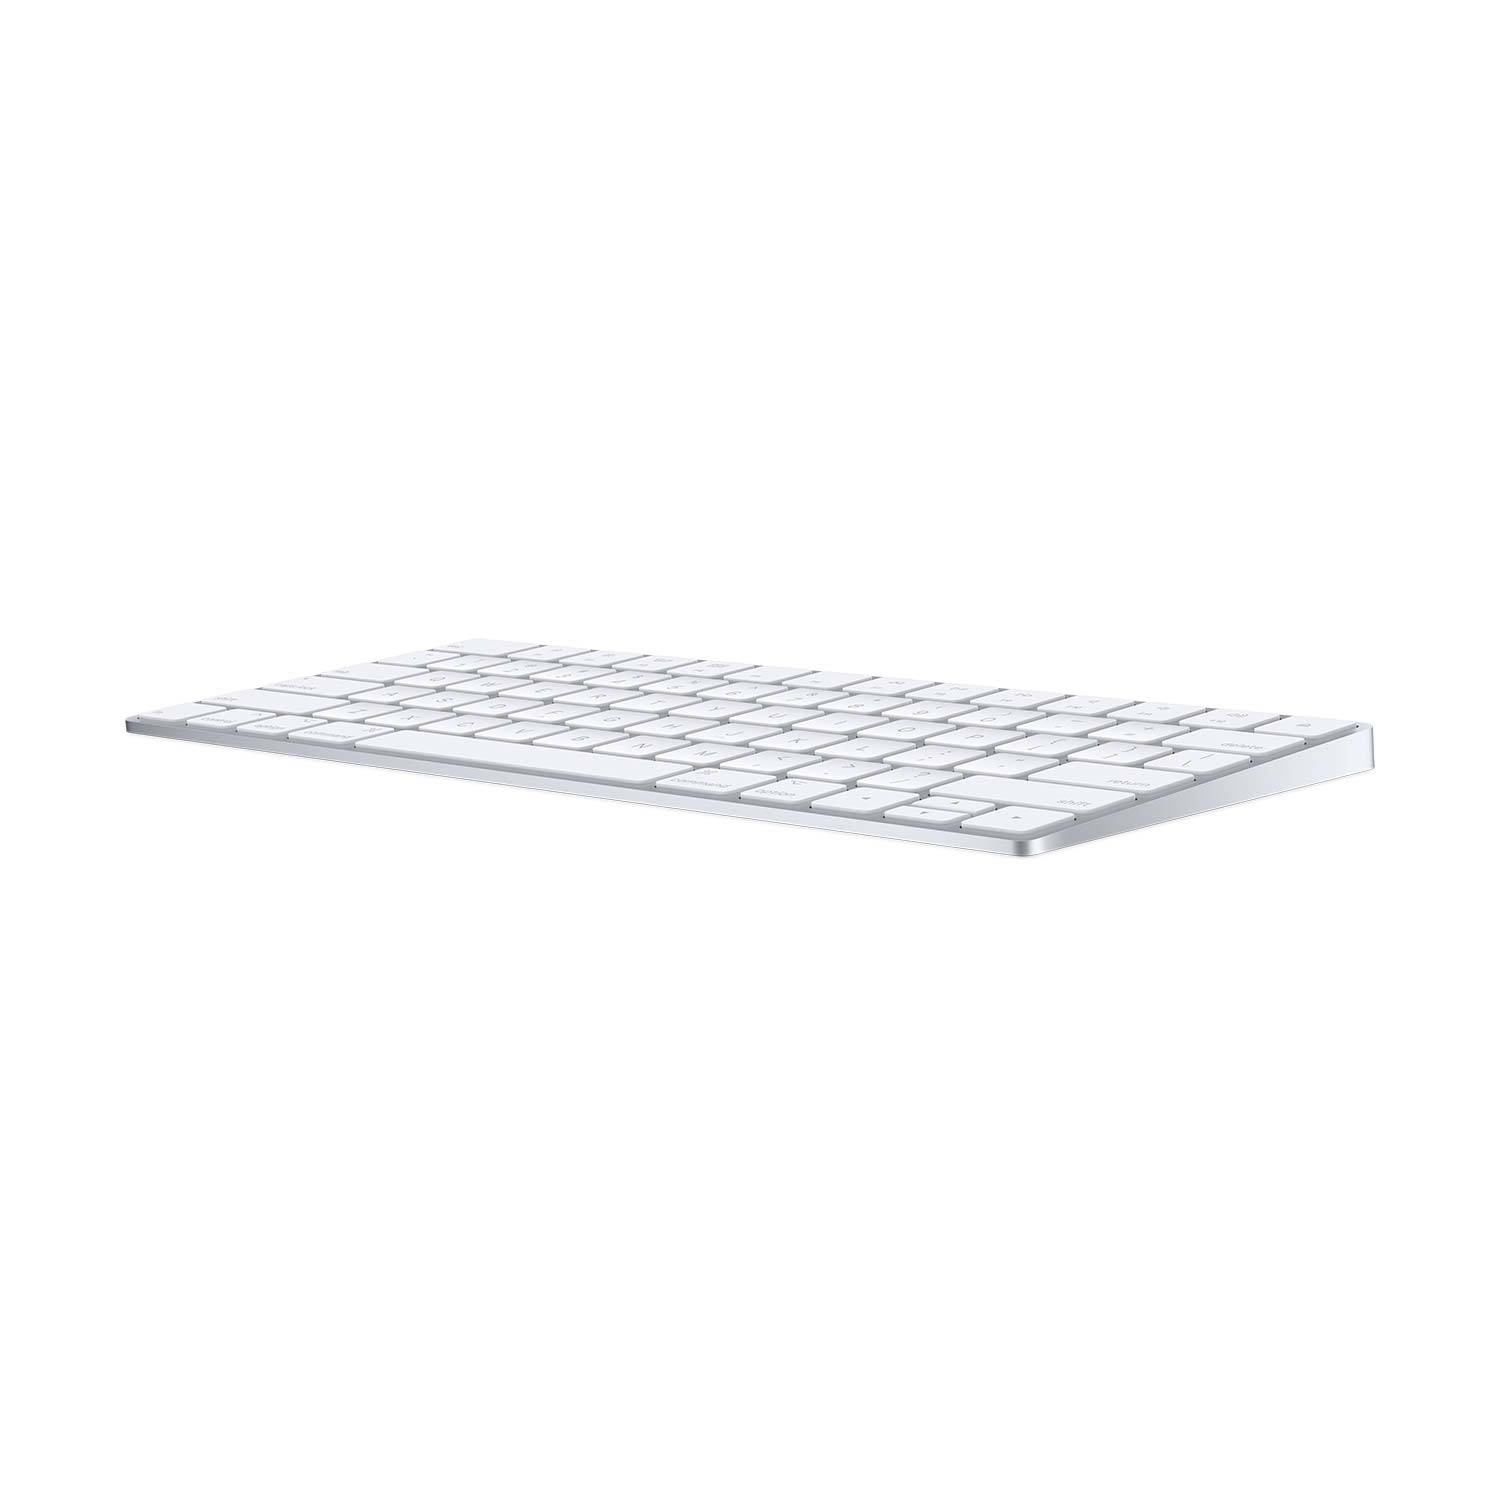 Apple Magic Keyboard mit Ziffernblock (DE) silber